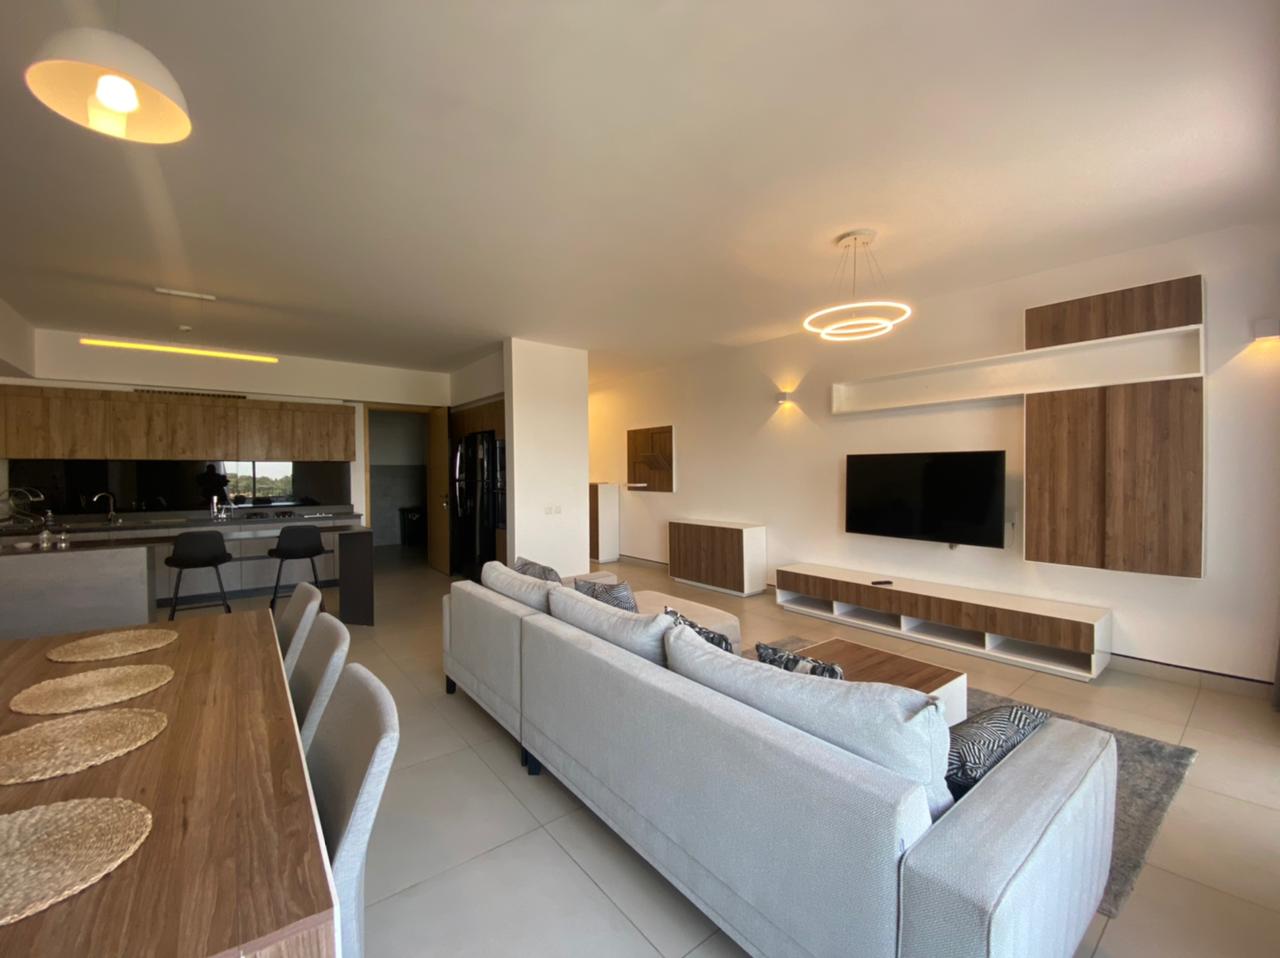 3 Bedroom Tastefully Furnished Apartment in Kilimani For Rent at Ksh265k (4)